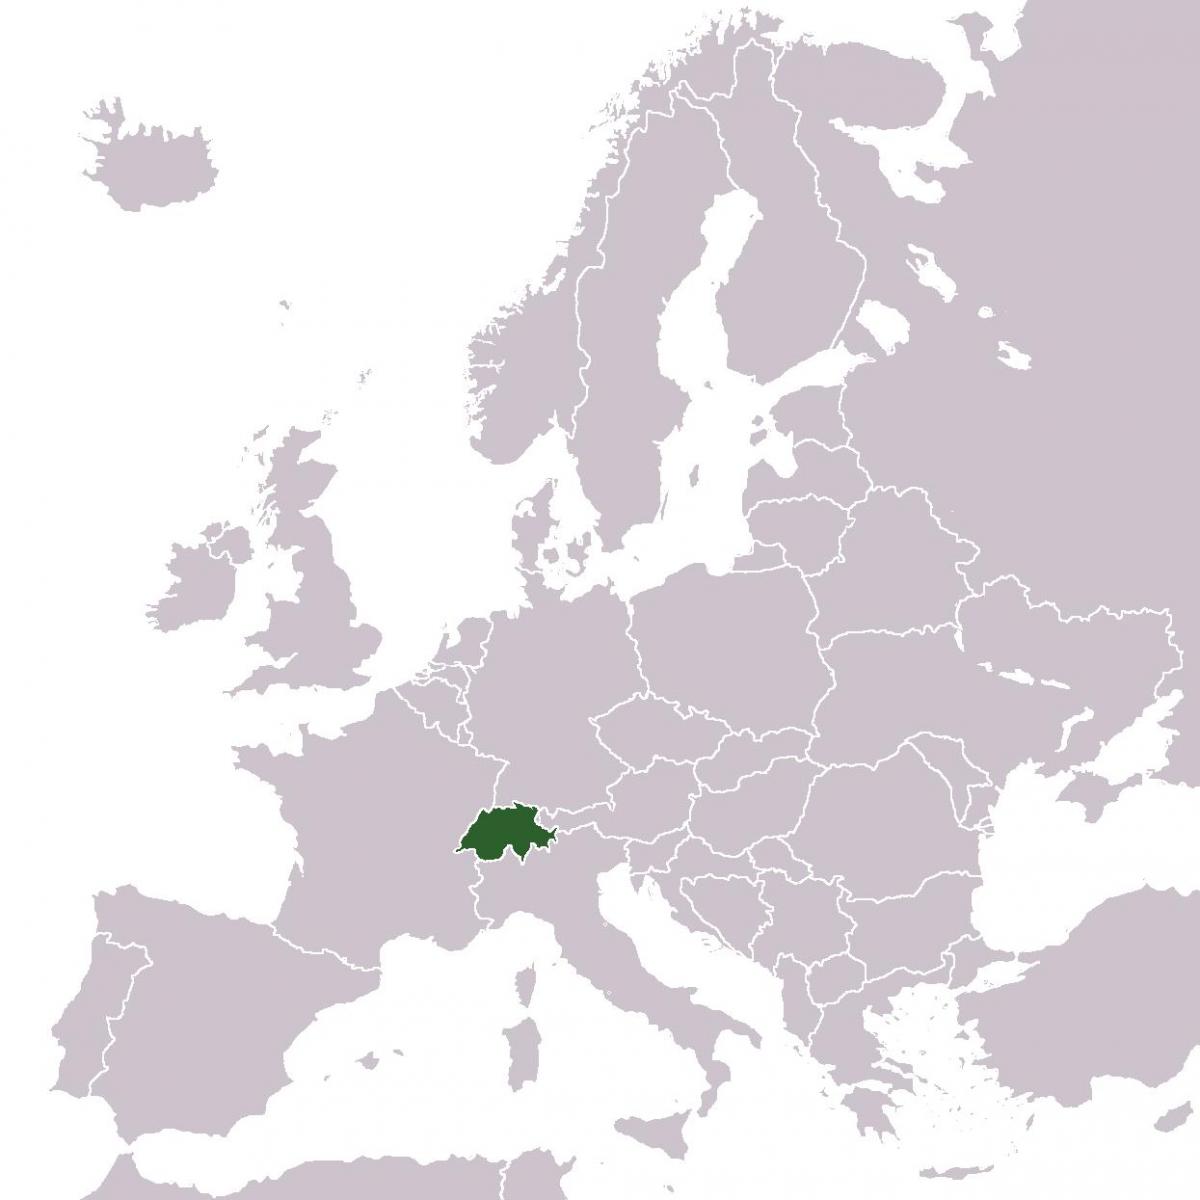 สวิตเซอร์แลนด์สถานที่ในยุโรปอยู่บนแผนที่